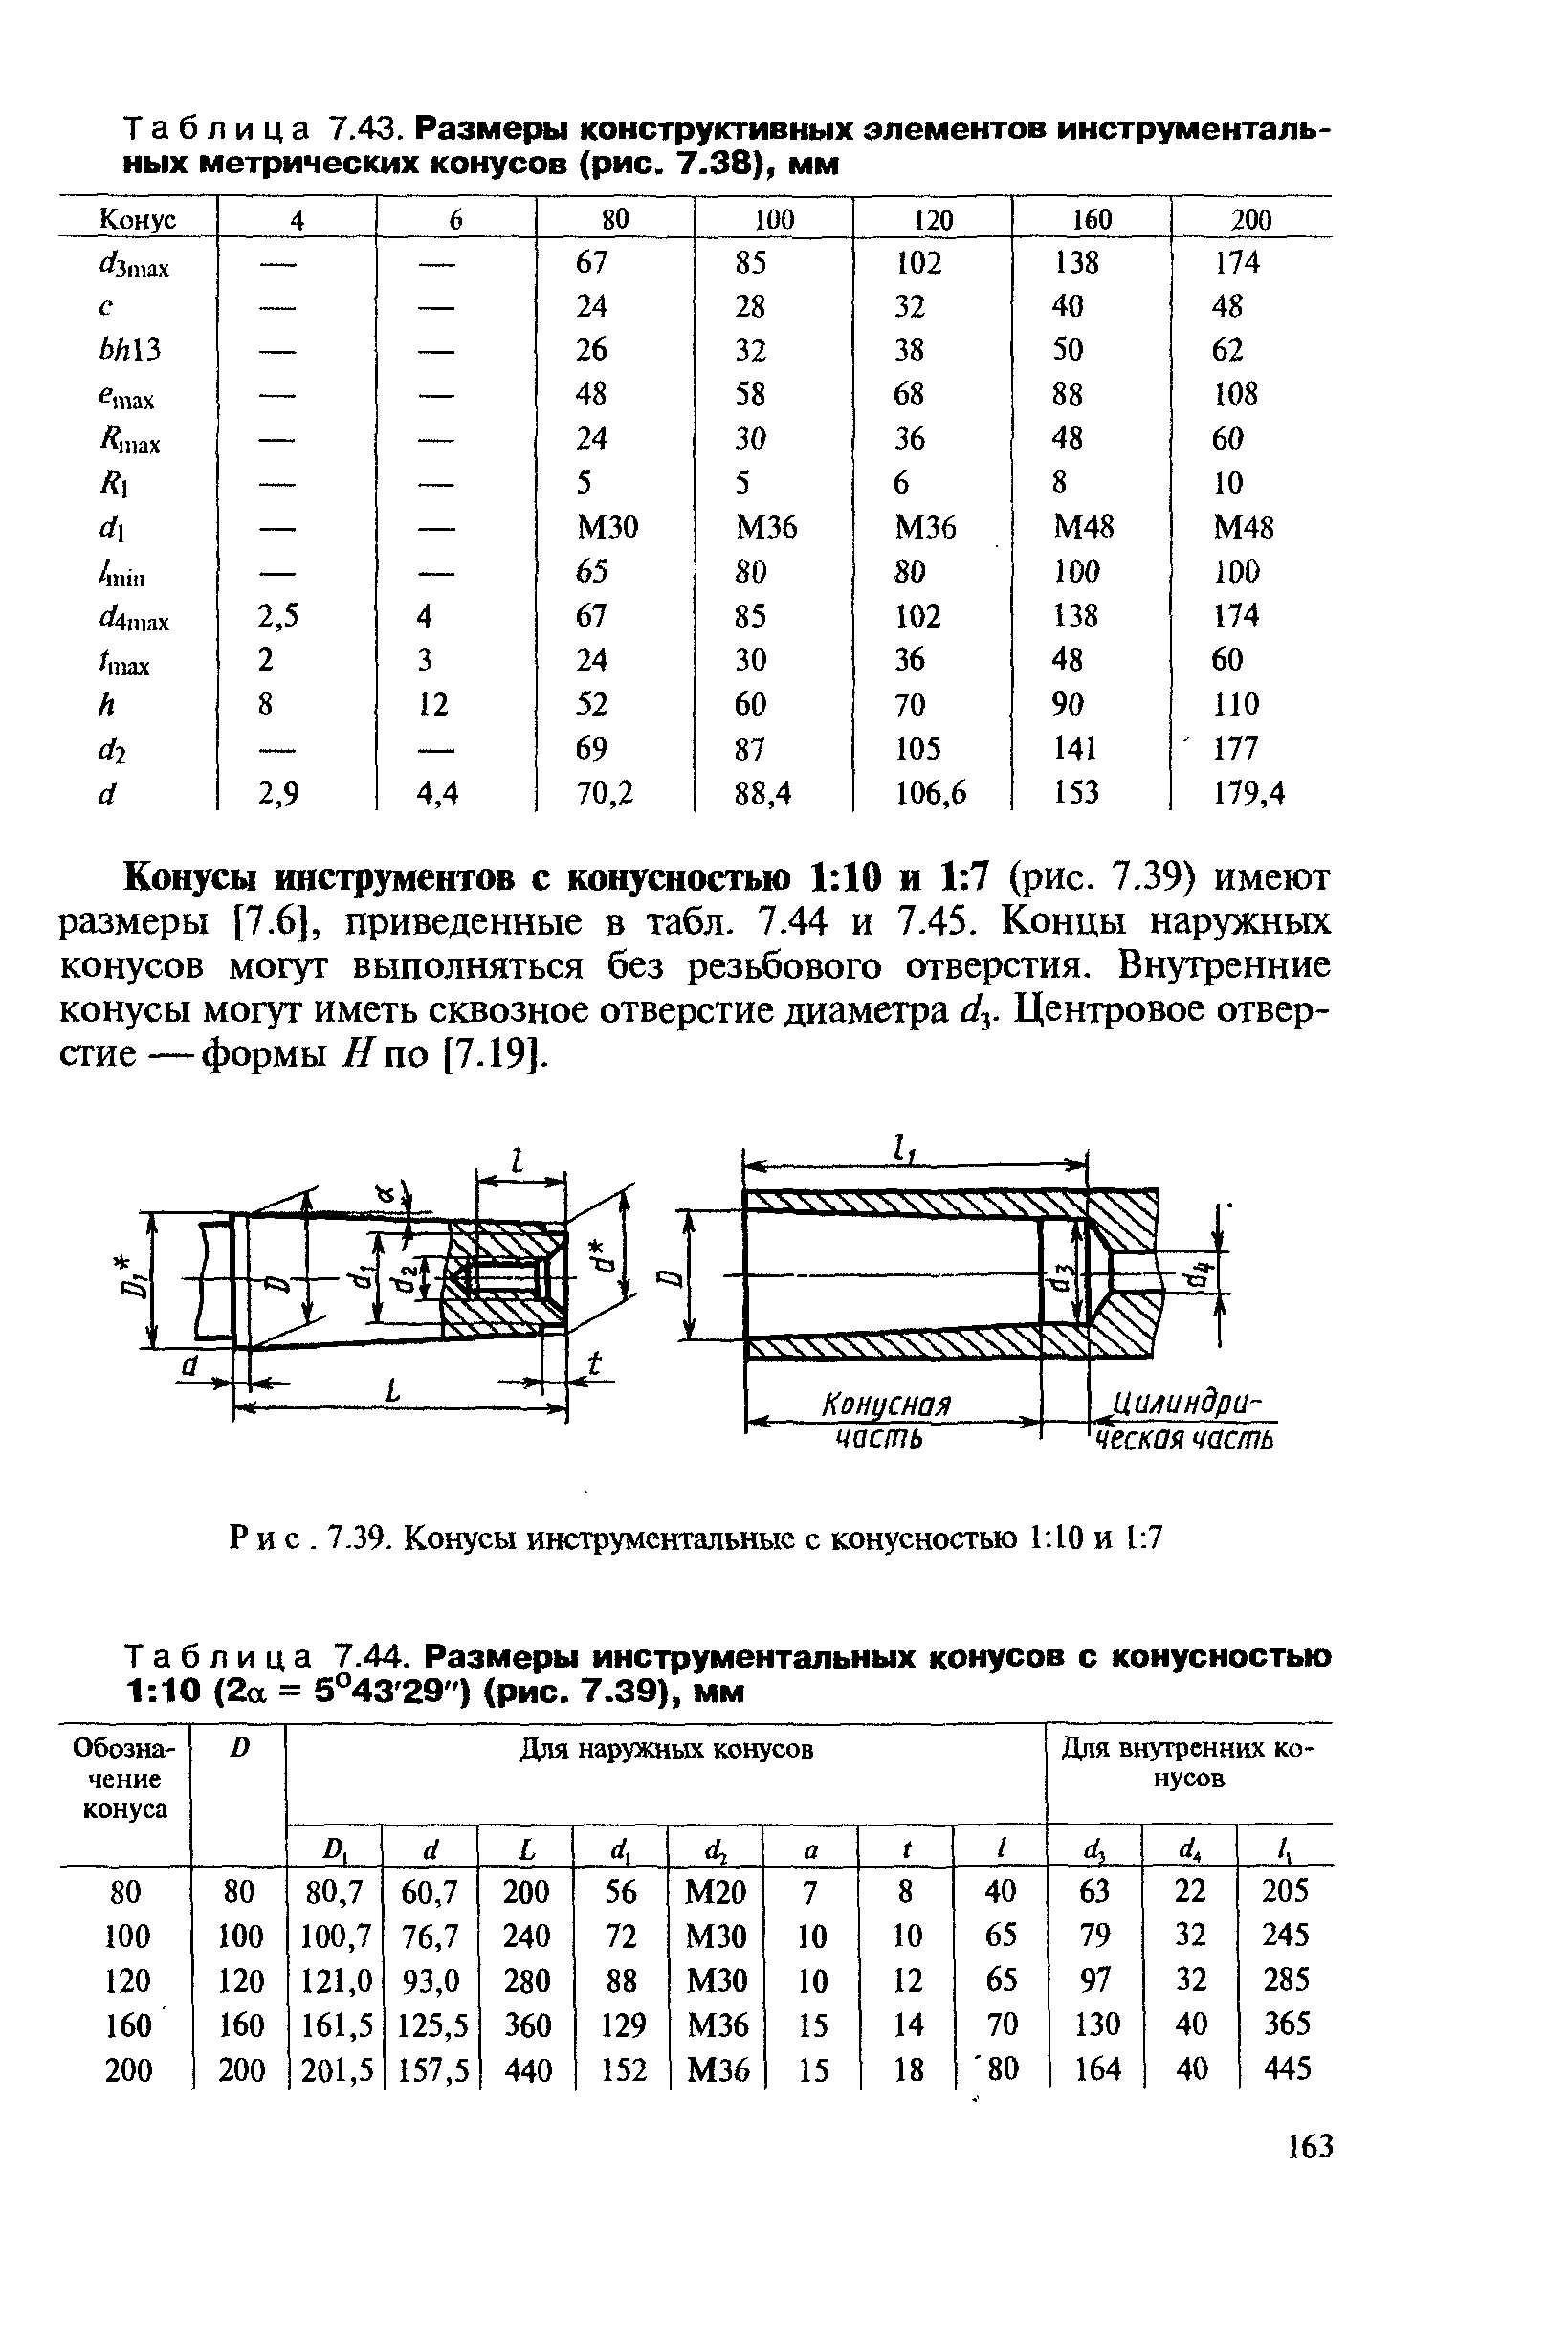 Таблица 7.44. Размеры инструментальных конусов с конусностью 1 10 (2а = 5°43 29") (рис. 7.39), мм
